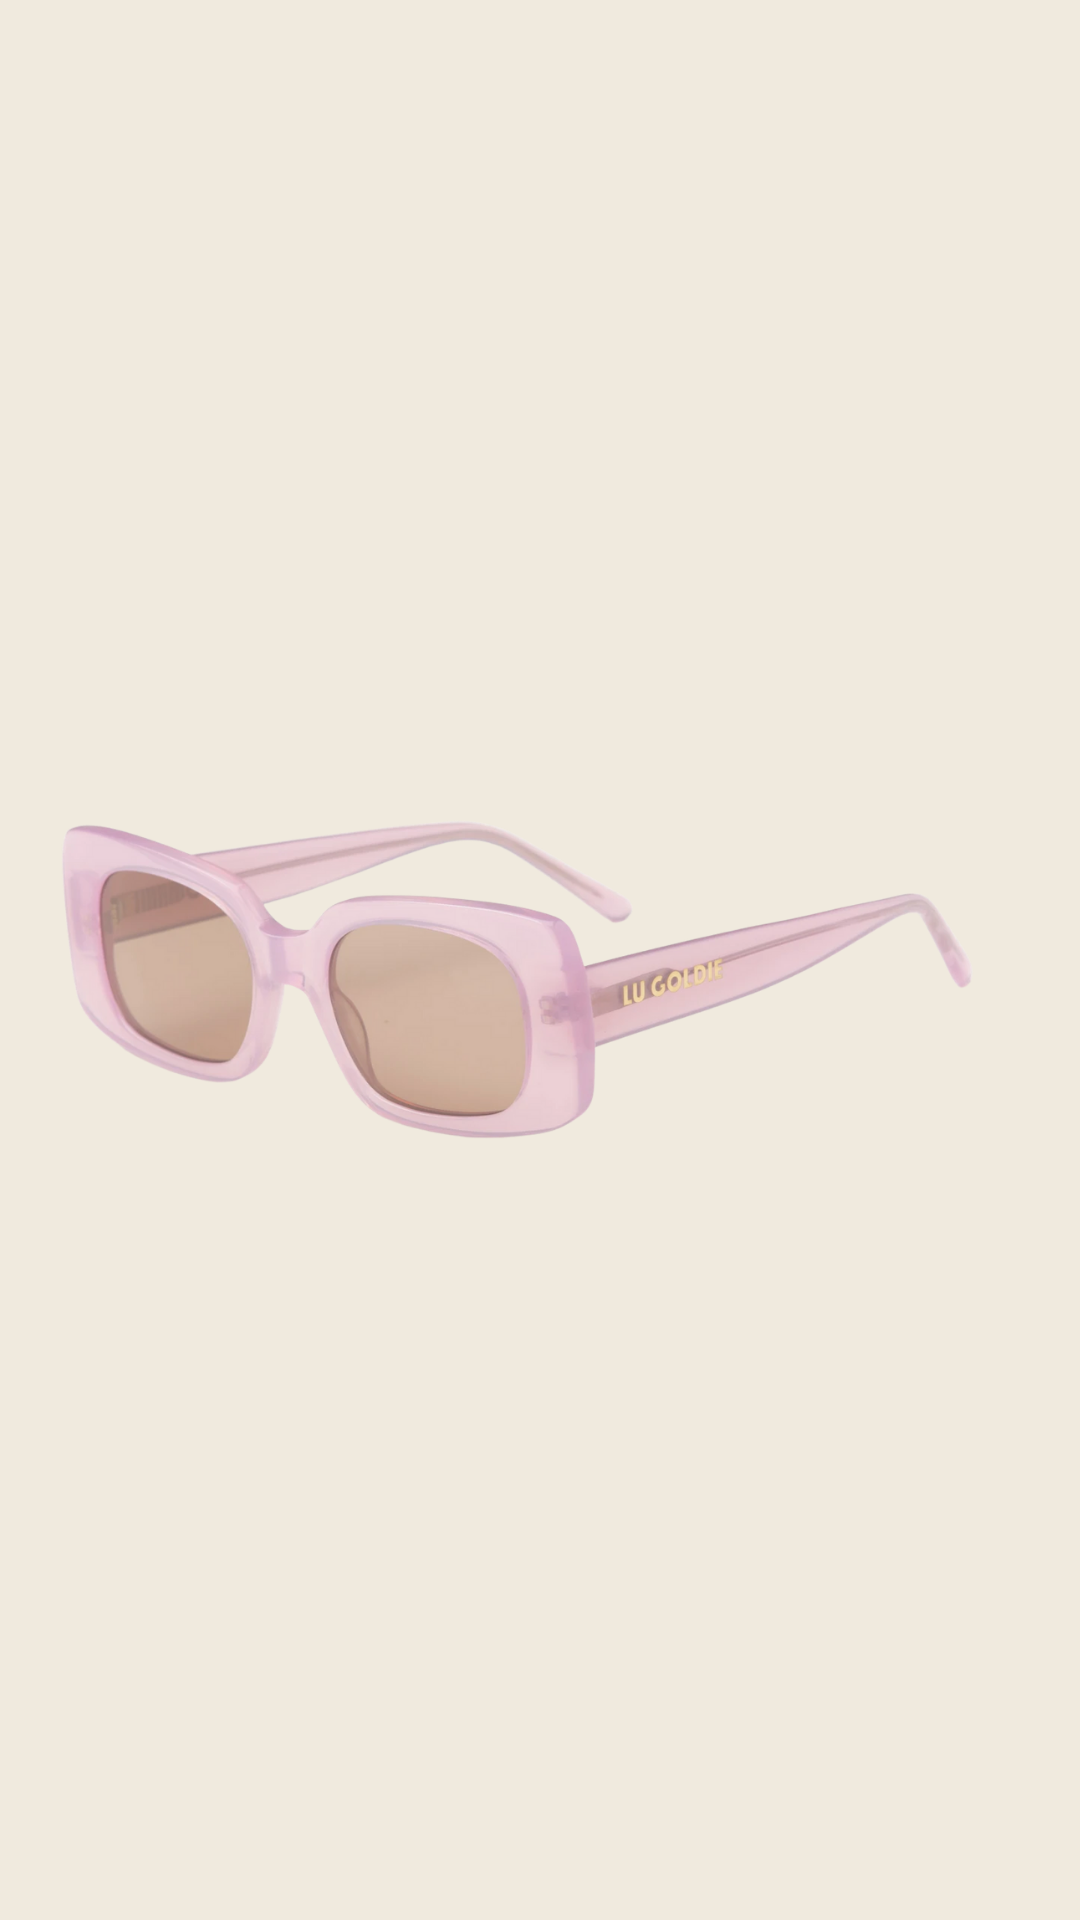 Coco Sunglasses in Lavender